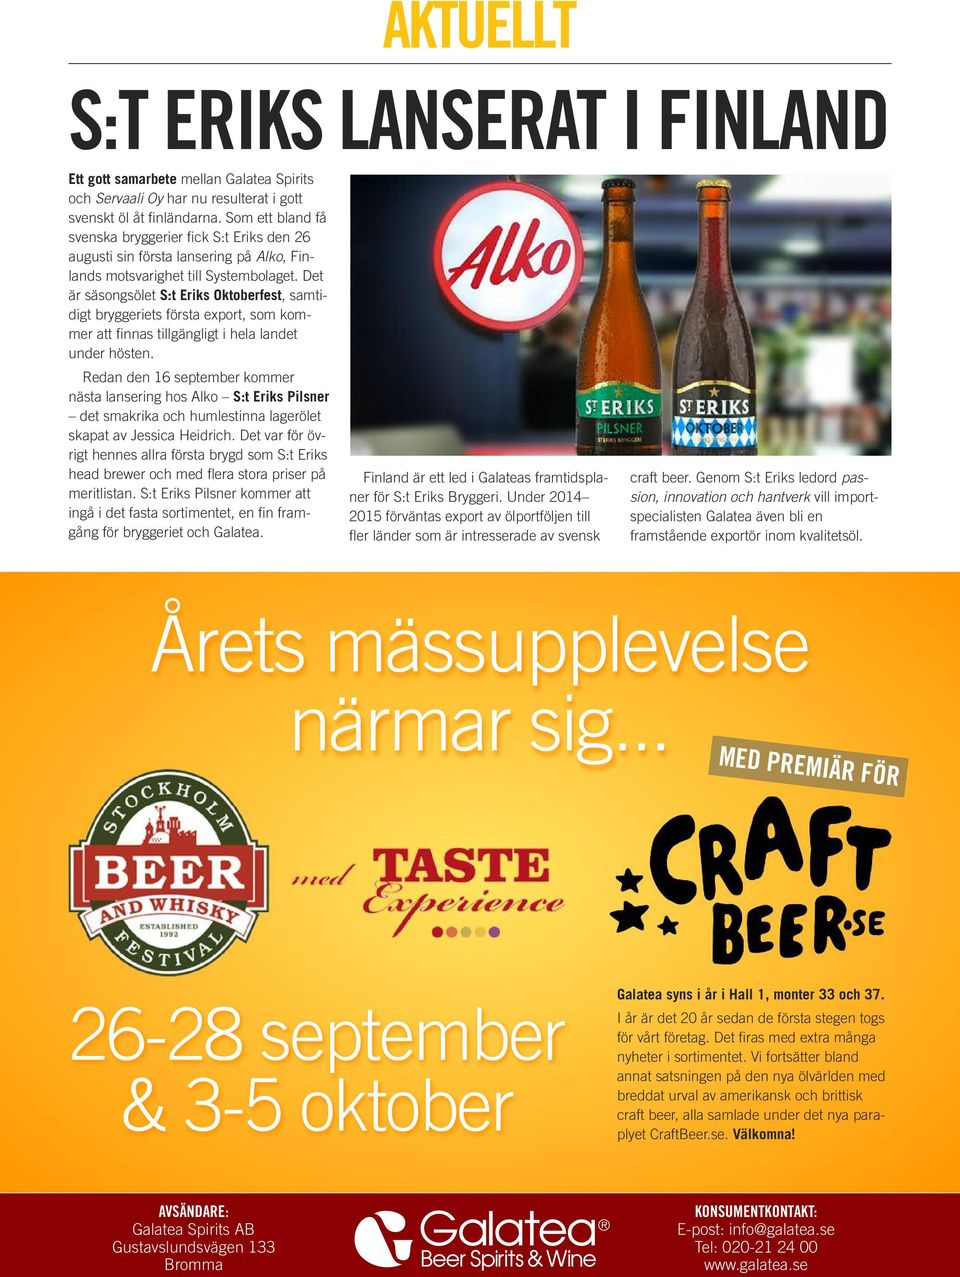 Det är säsongsölet S:t Eriks Oktoberfest, samtidigt bryggeriets första export, som kommer att finnas tillgängligt i hela landet under hösten.